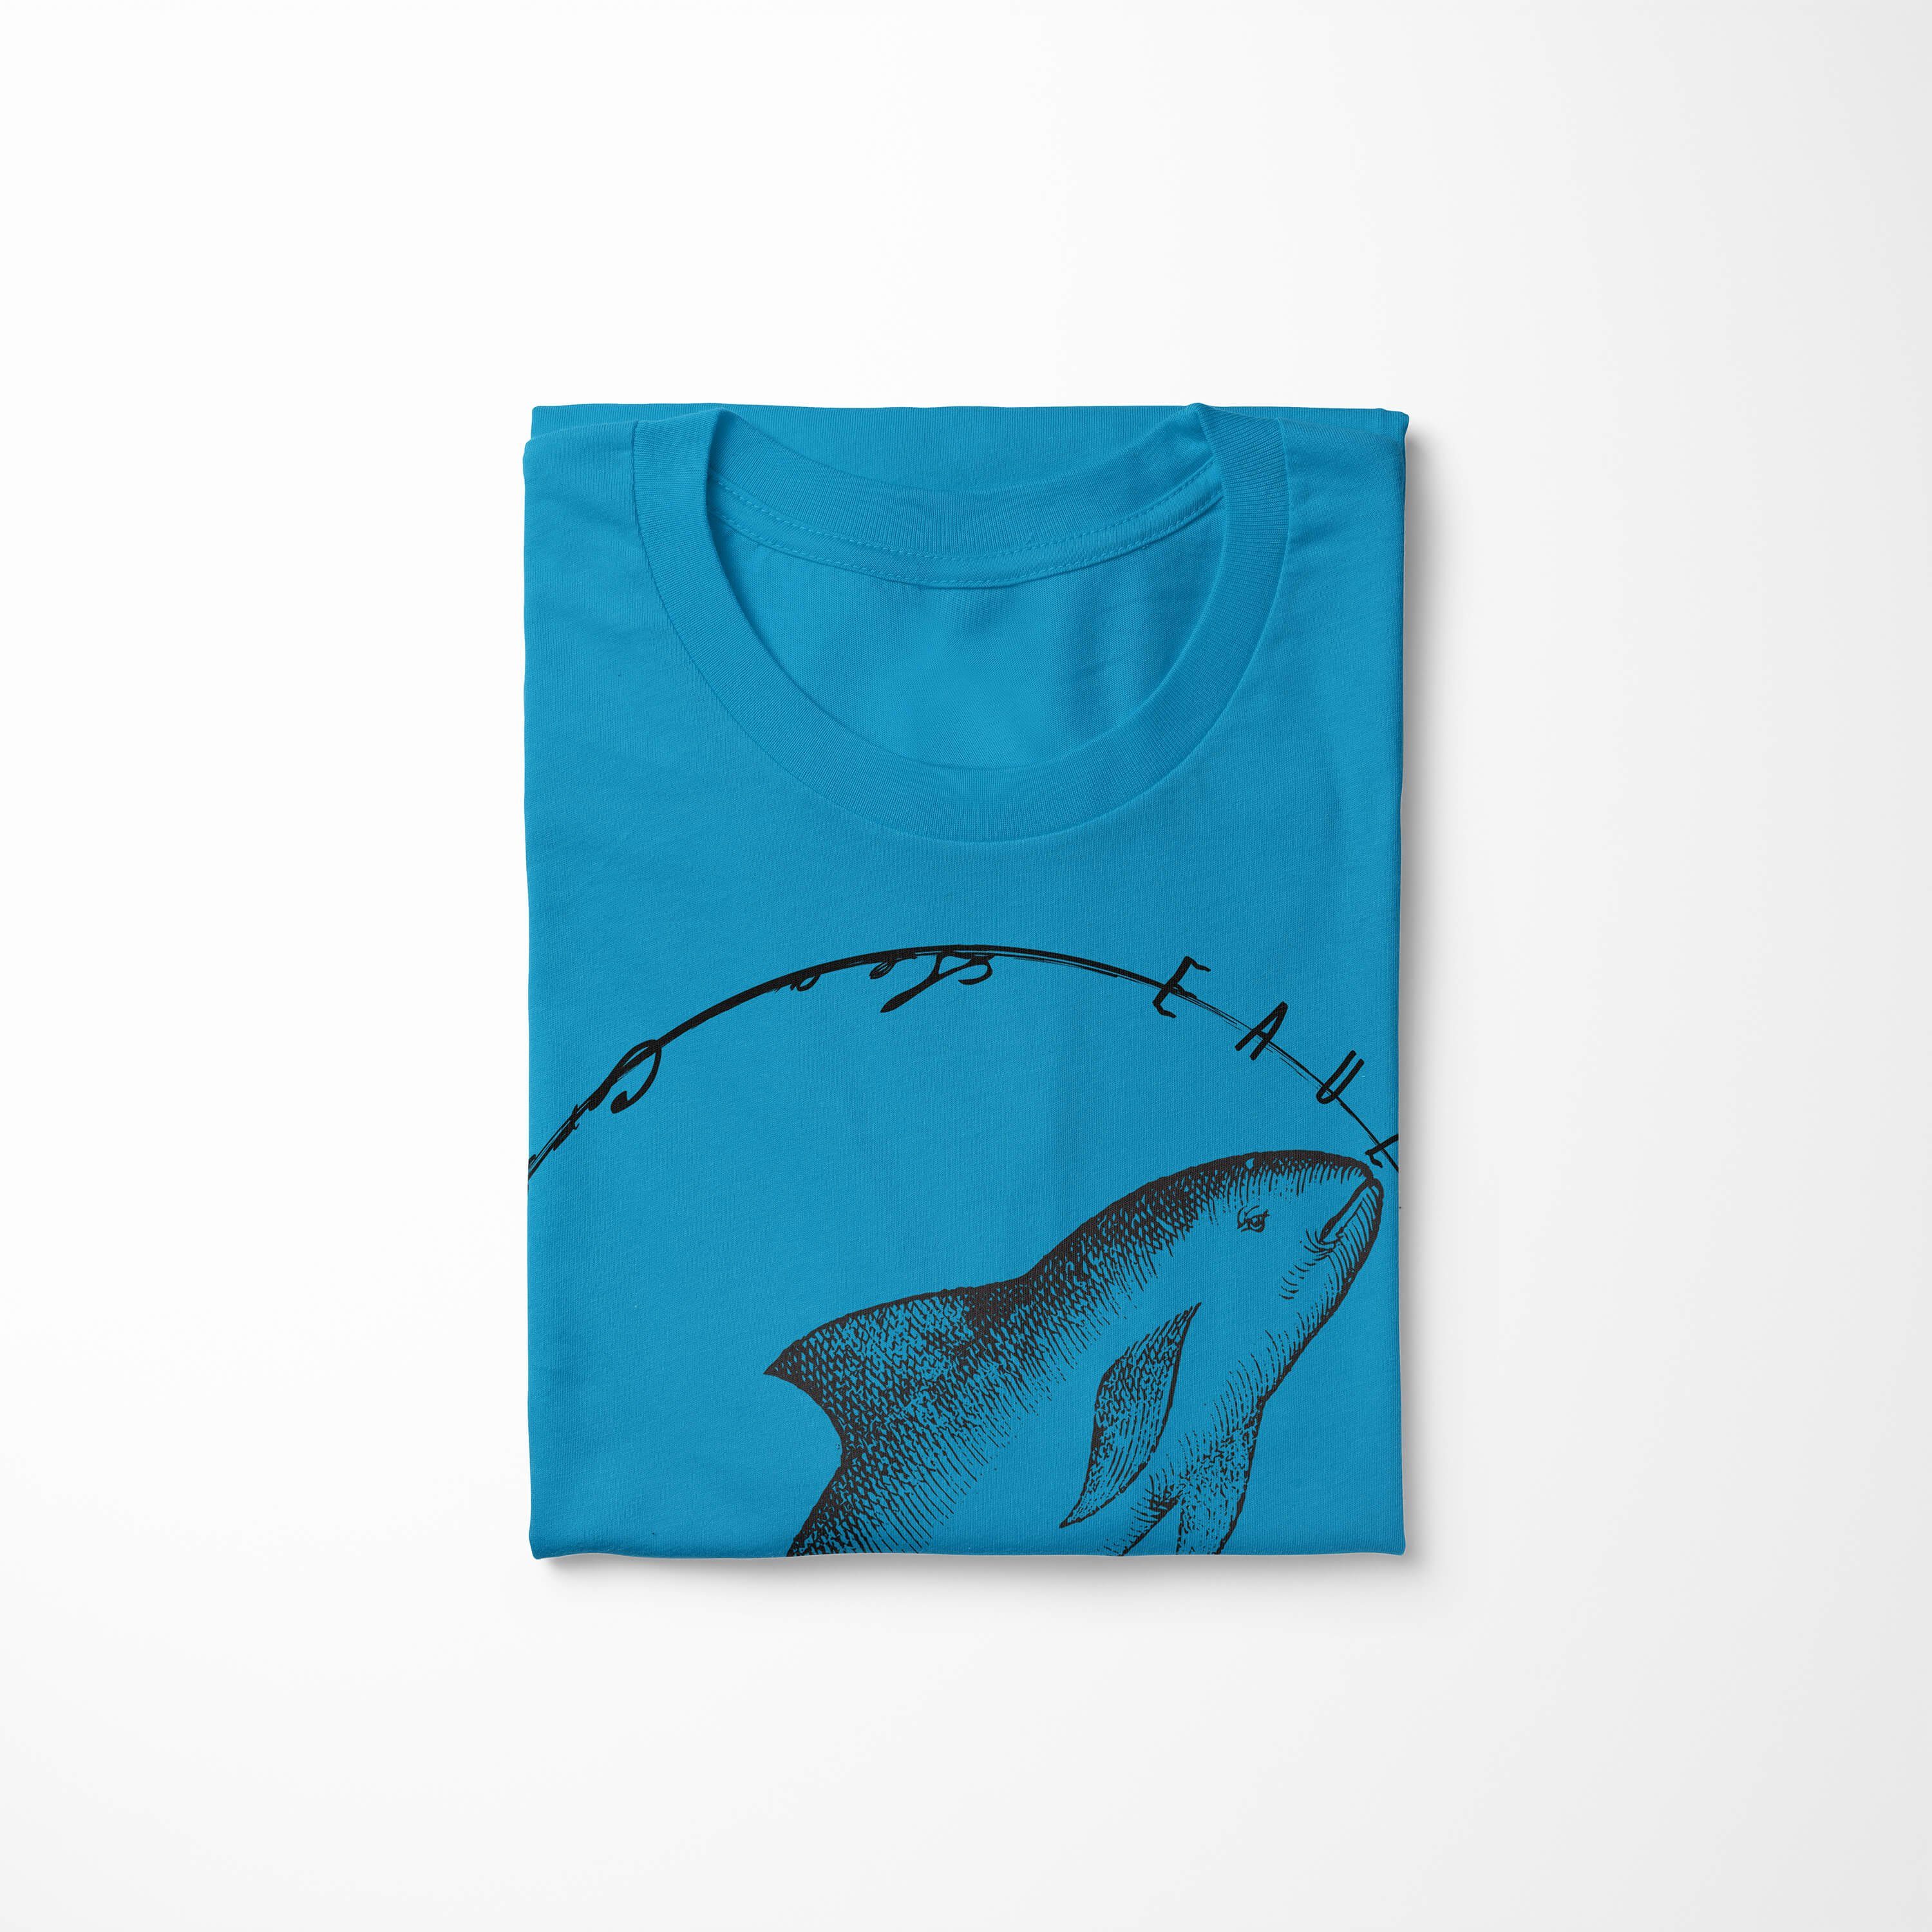 Sinus Art / Schnitt Sea - und Serie: Tiefsee feine Creatures, 060 T-Shirt Fische Sea Struktur T-Shirt Atoll sportlicher